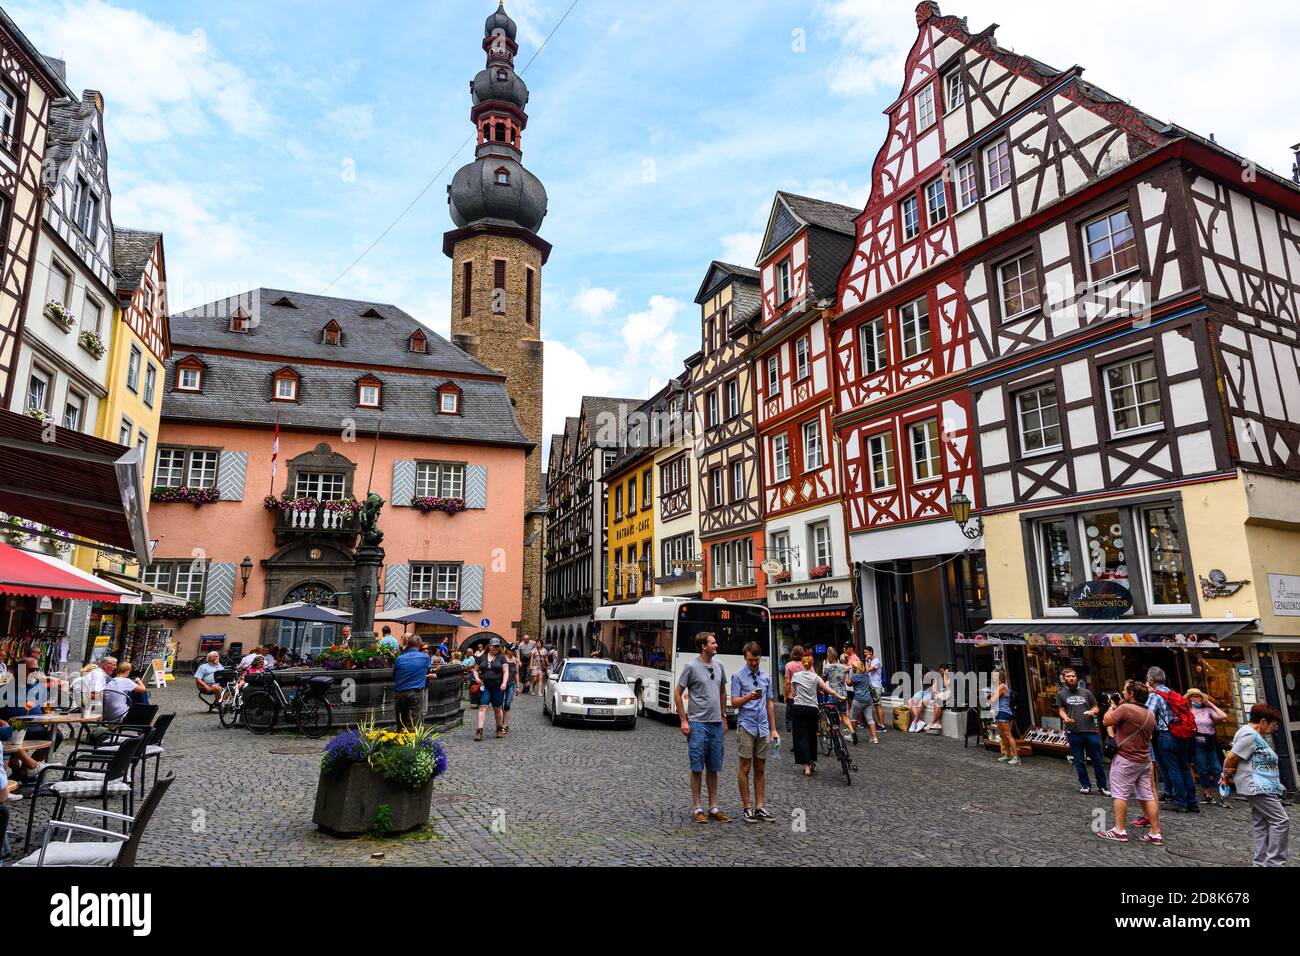 18 juillet 2020 : Cochem. Belle ville historique sur la romantique Moselle, la Moselle. Vue sur la ville, place du marché, église, maison à colombages, maisons. Rhinel Banque D'Images